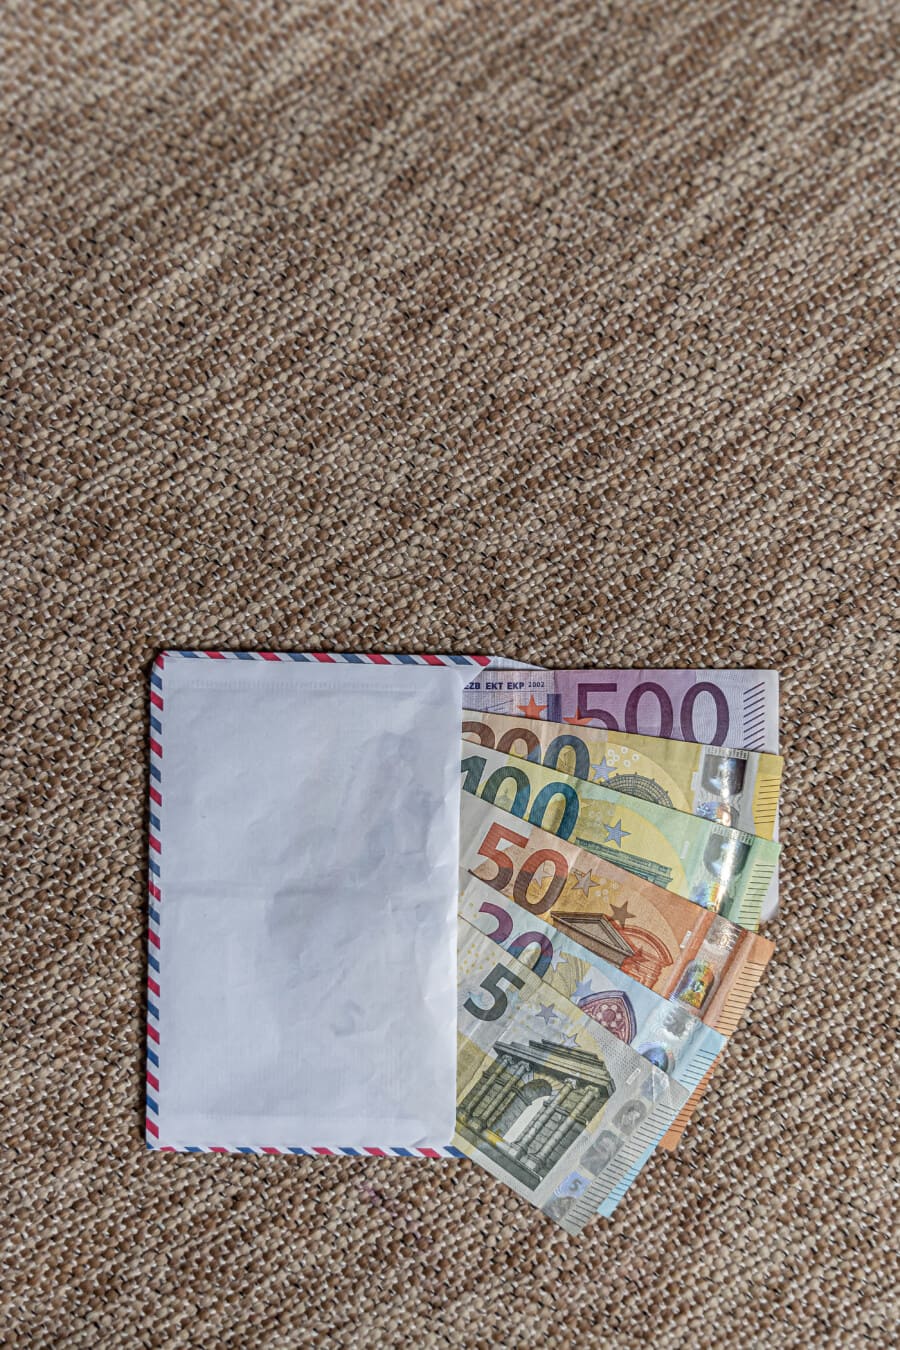 Bancnote de hârtie din Uniunea Europeană în plic (€5, €20, €50, €100, €200, €500)